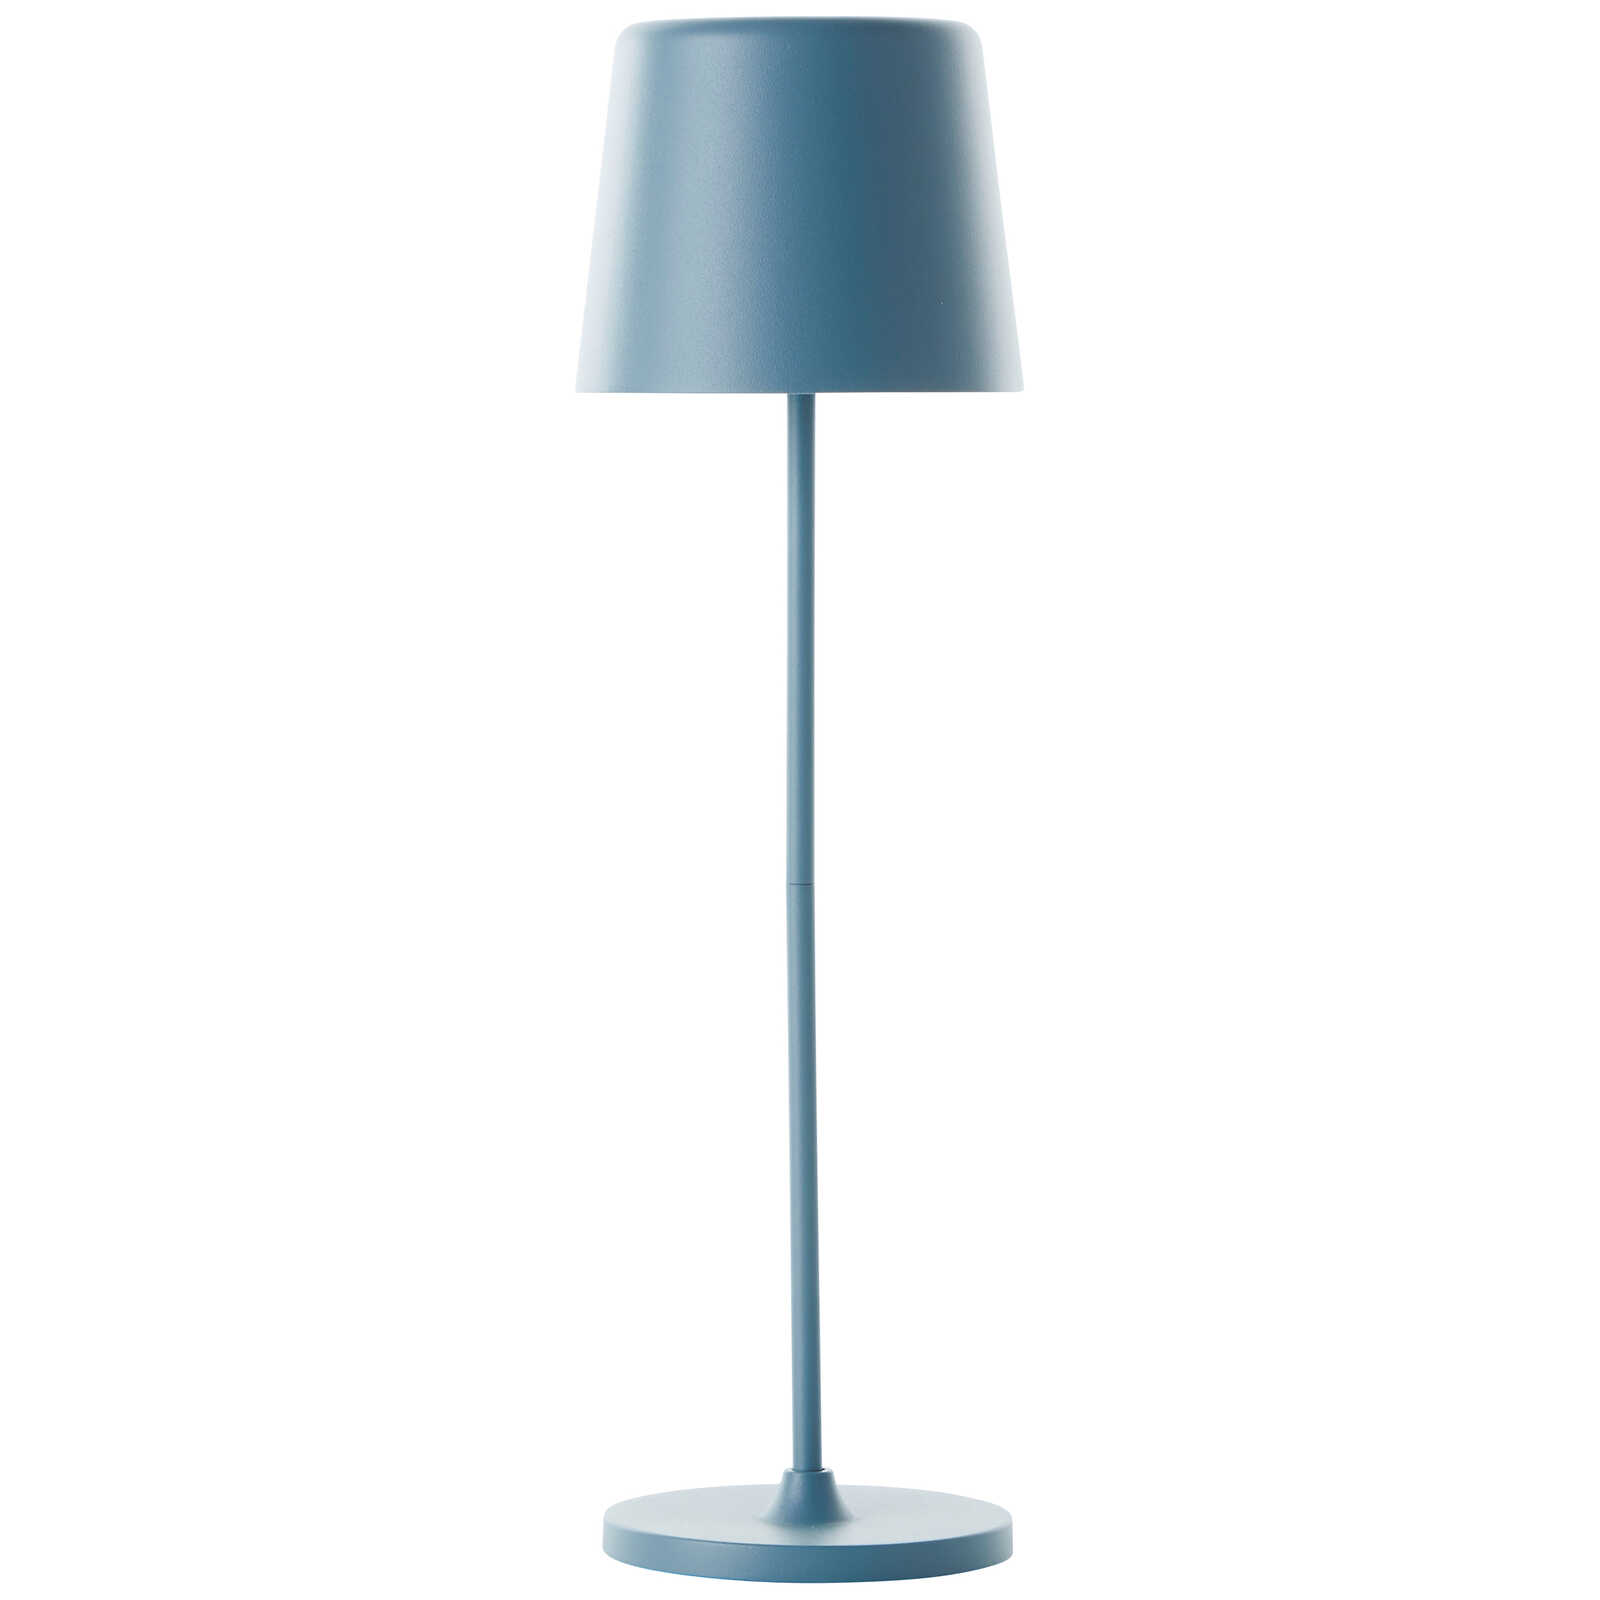             Lampada da tavolo in metallo - Cosy 1 - Blu
        